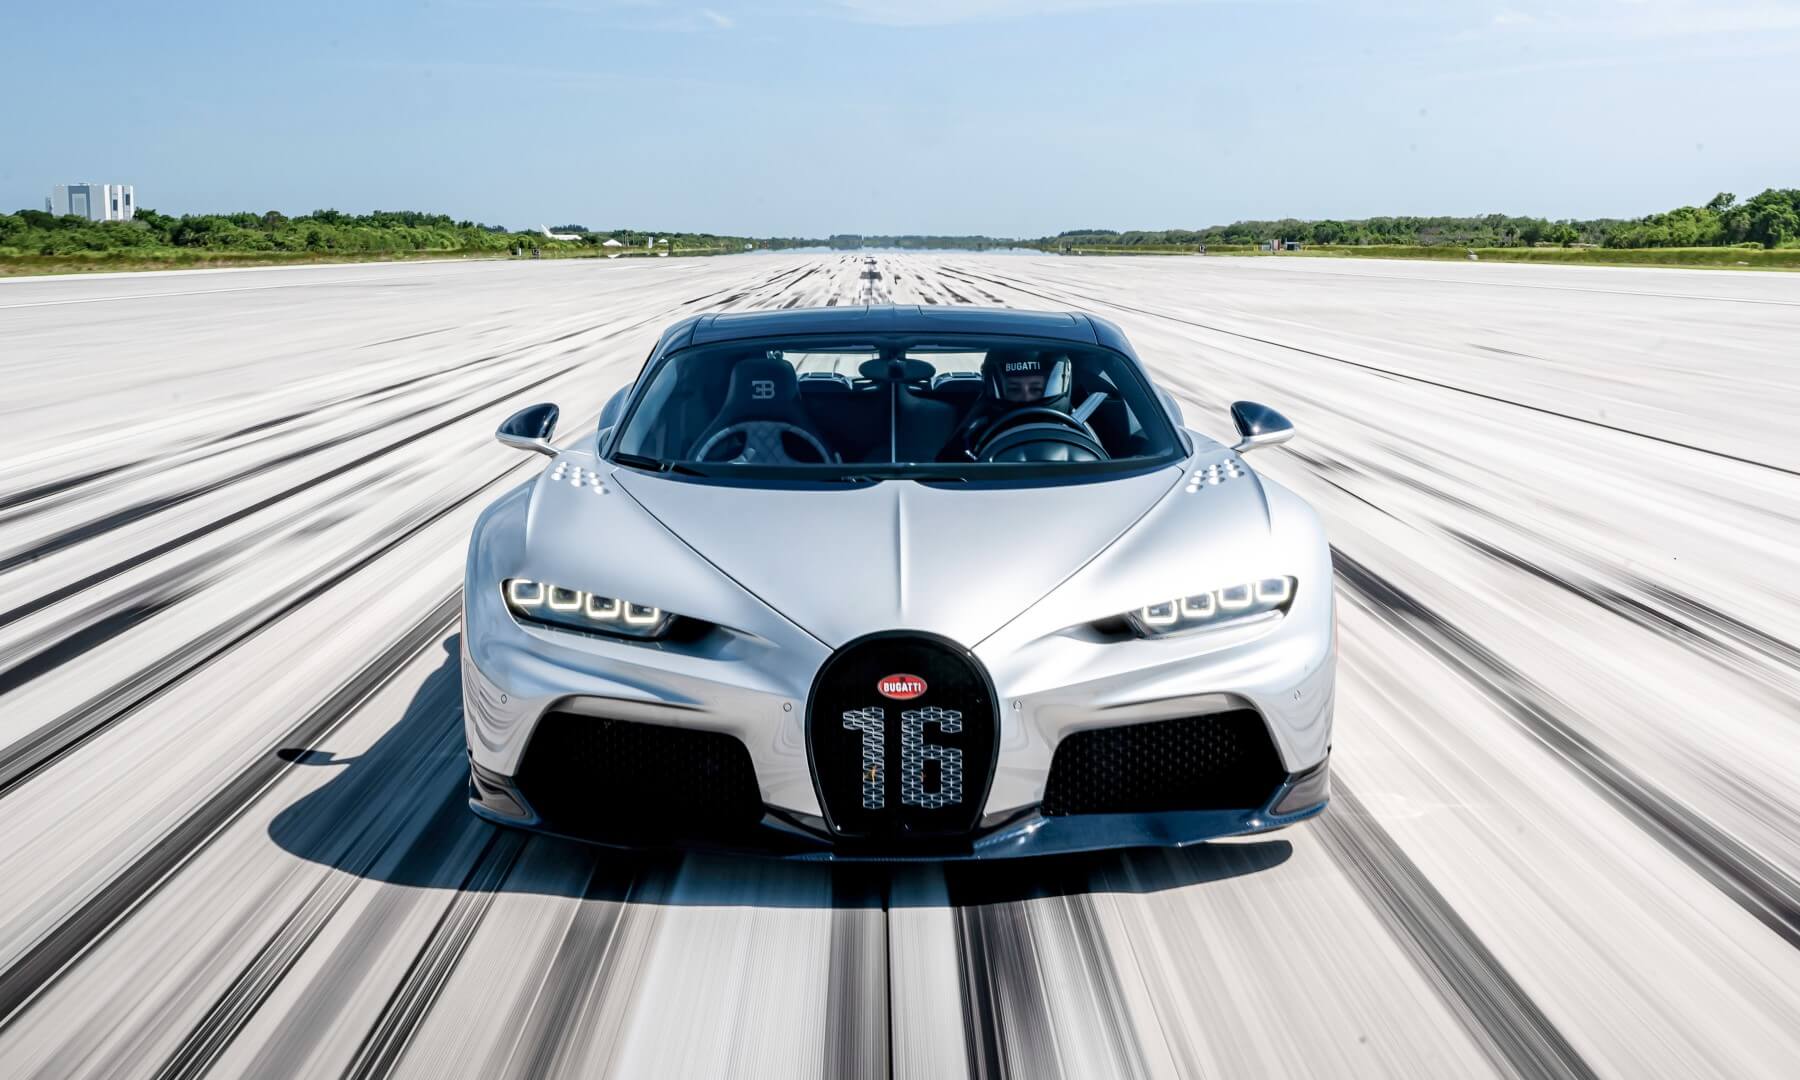 400 km/h in a Bugatti Chiron